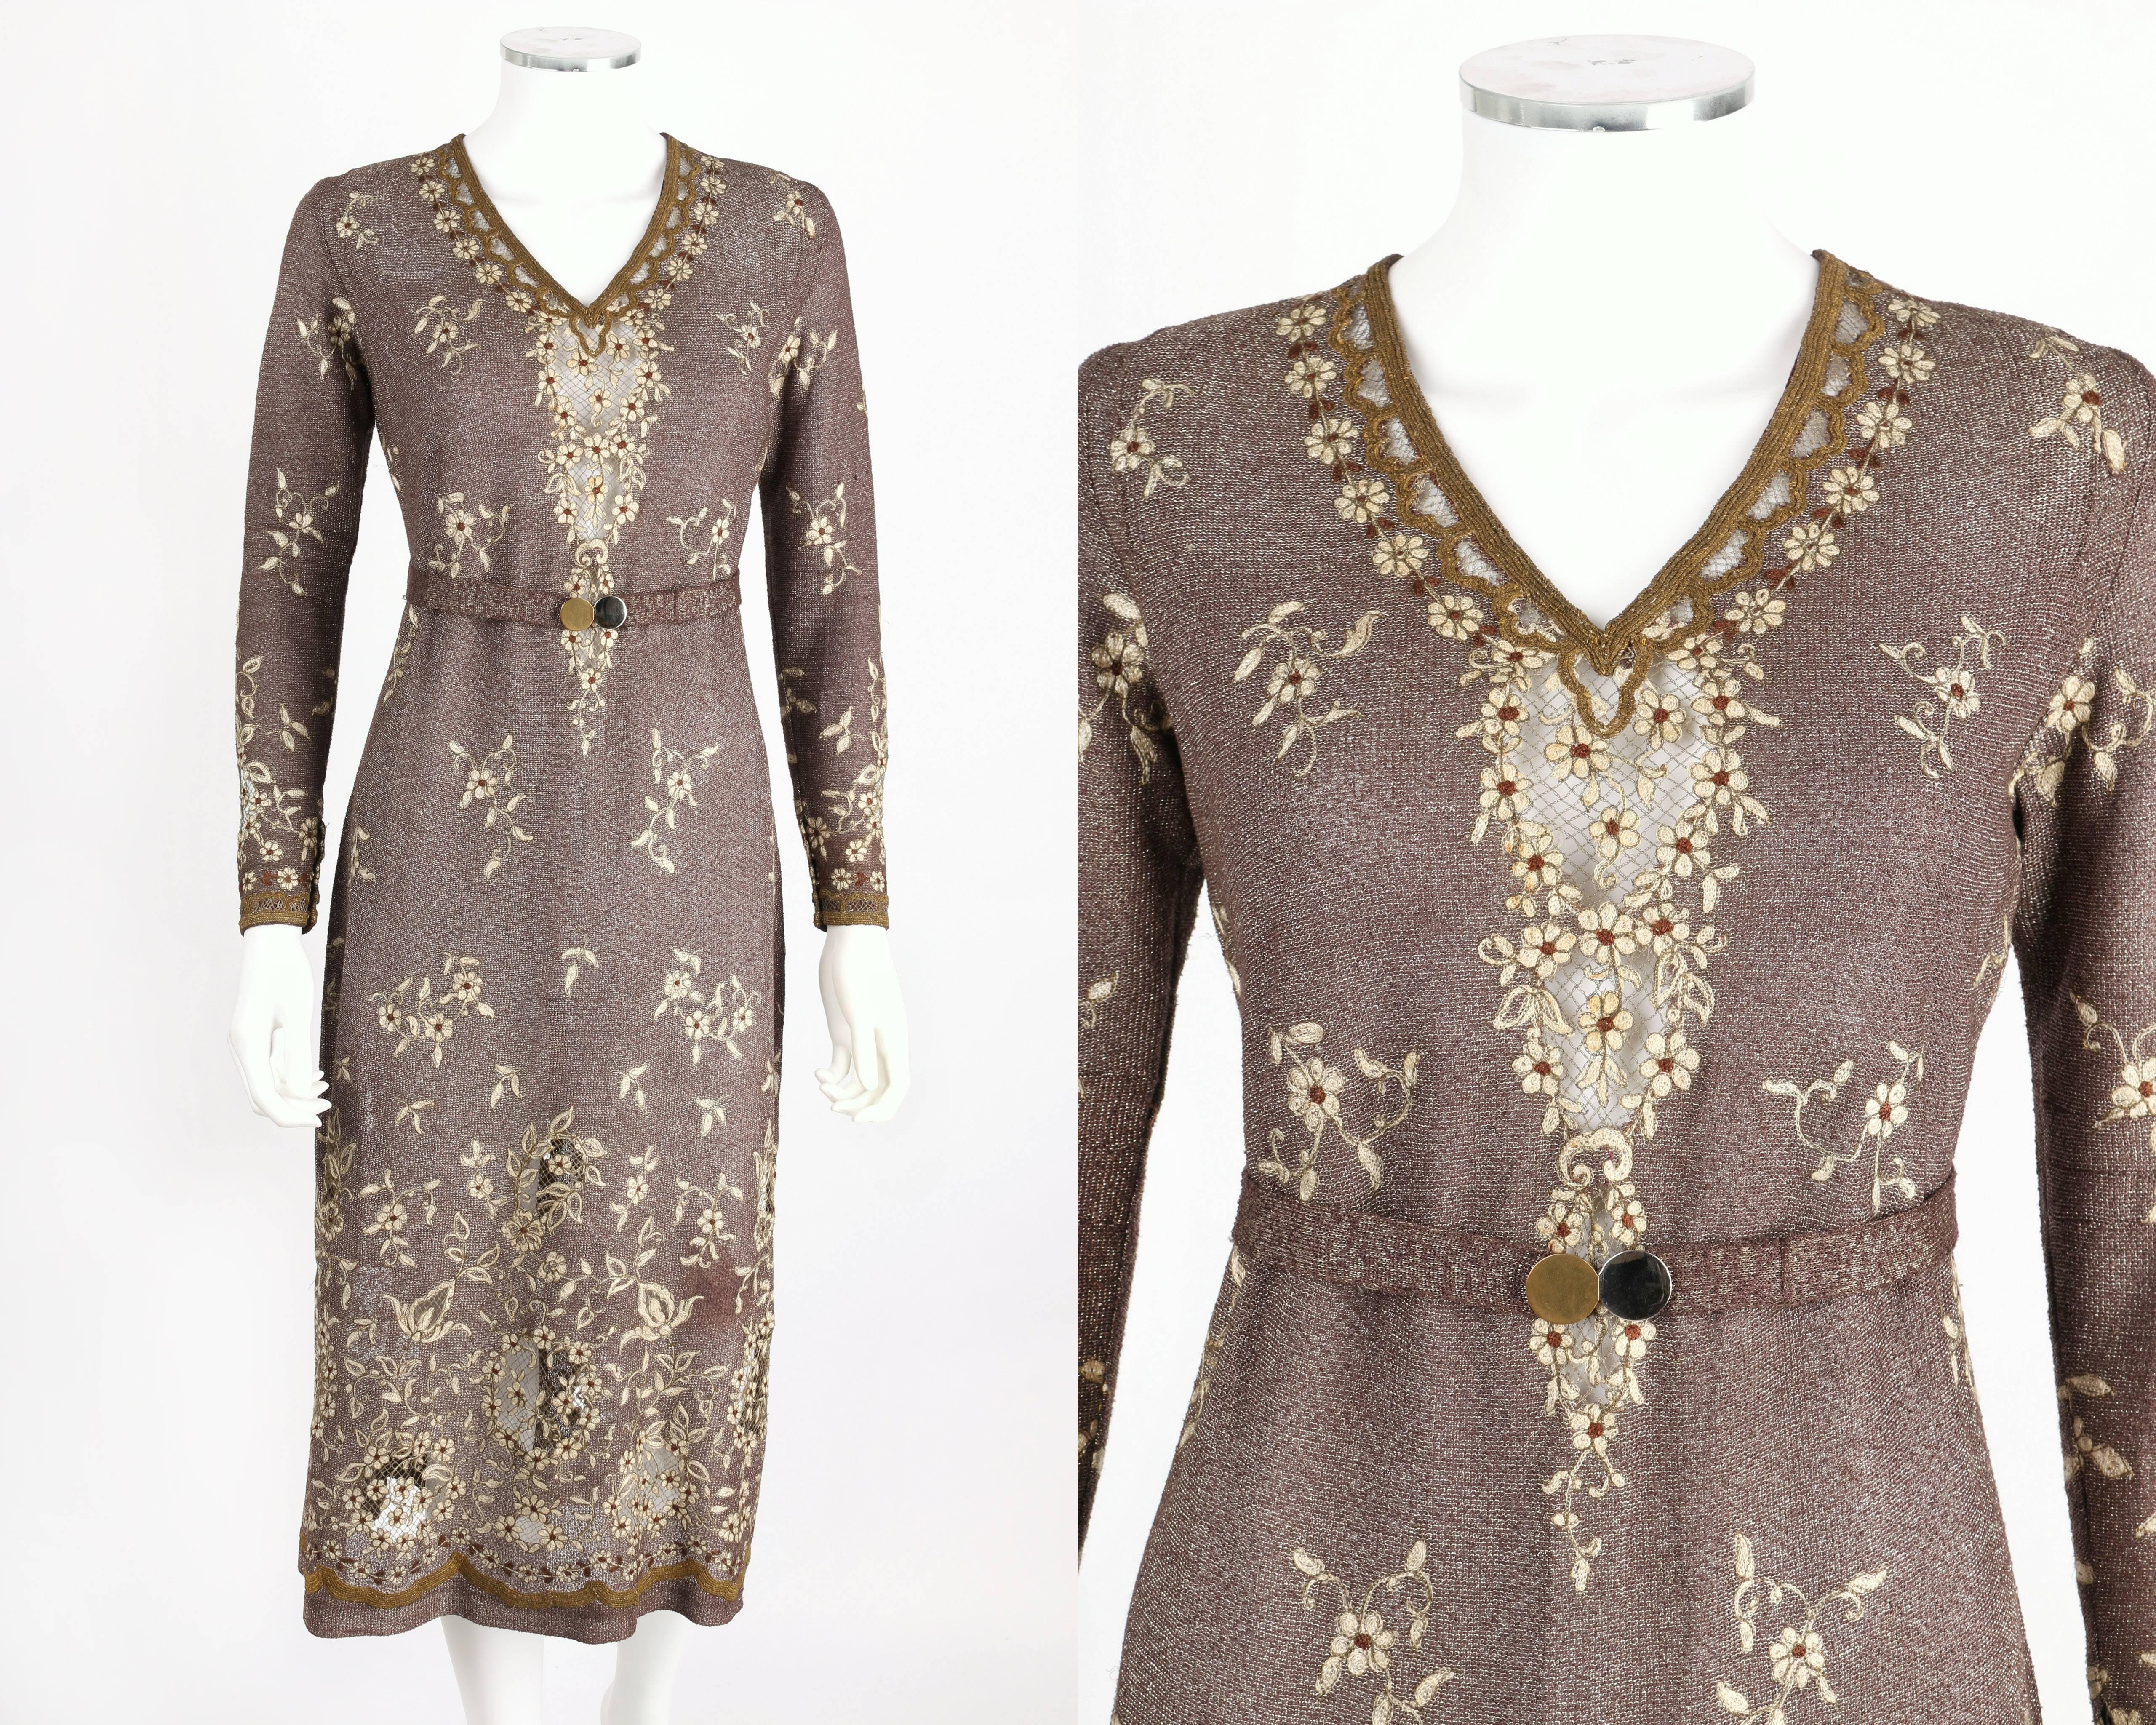 Robe en tricot marron/bronze et argent métallisé incroyablement inhabituelle datant des années 1930. Contient une étiquette partielle marquée 